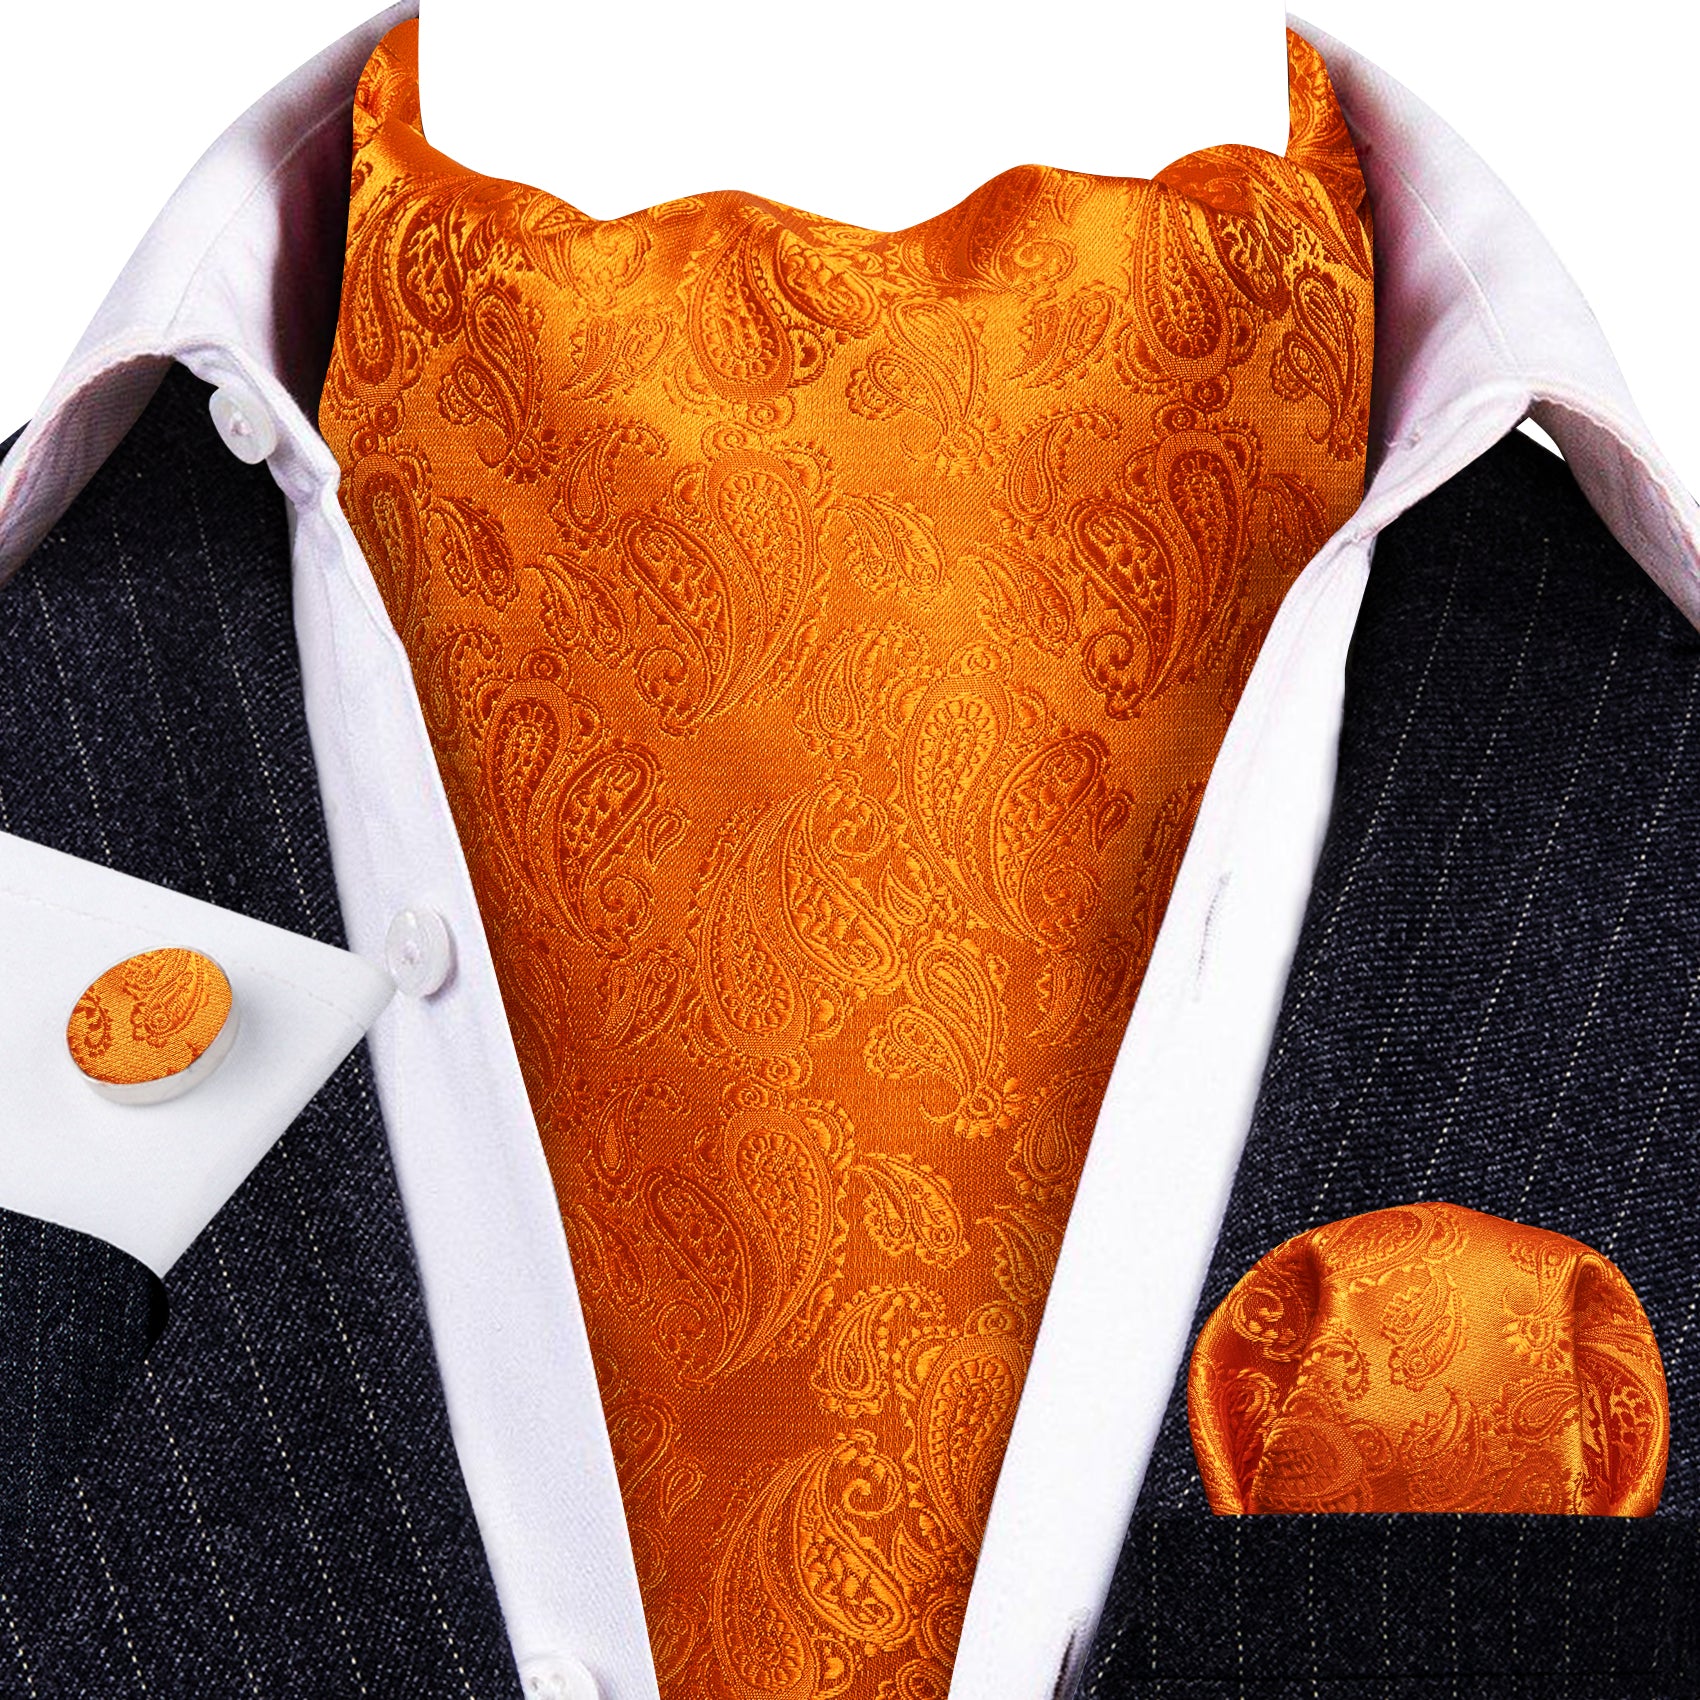 Barry.wang Orange Tie Paisley Silk Men's Ascot Tie Hanky Cufflinks Set